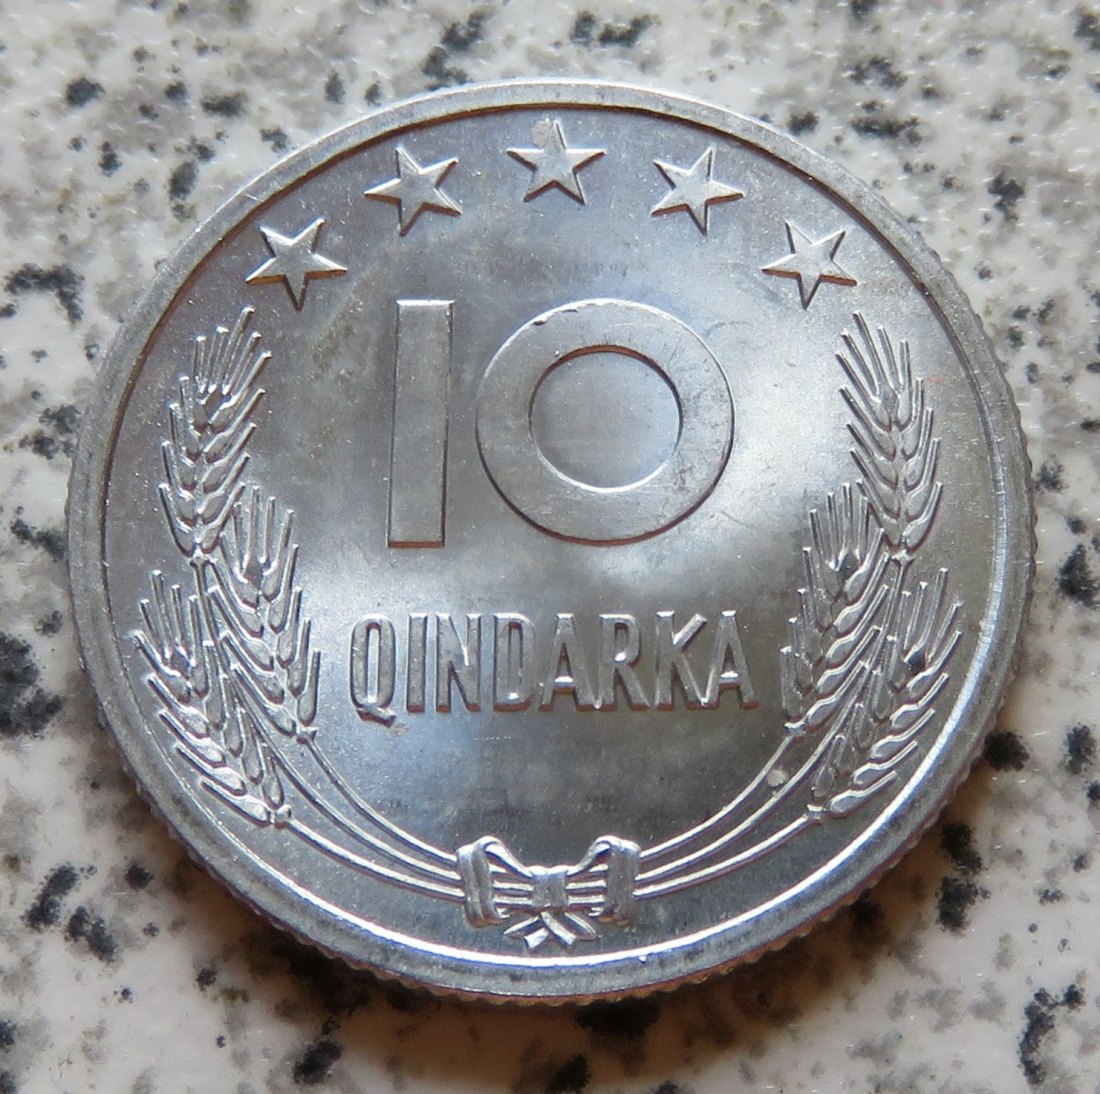  Albanien 10 Qindarka 1964, Erhaltung   